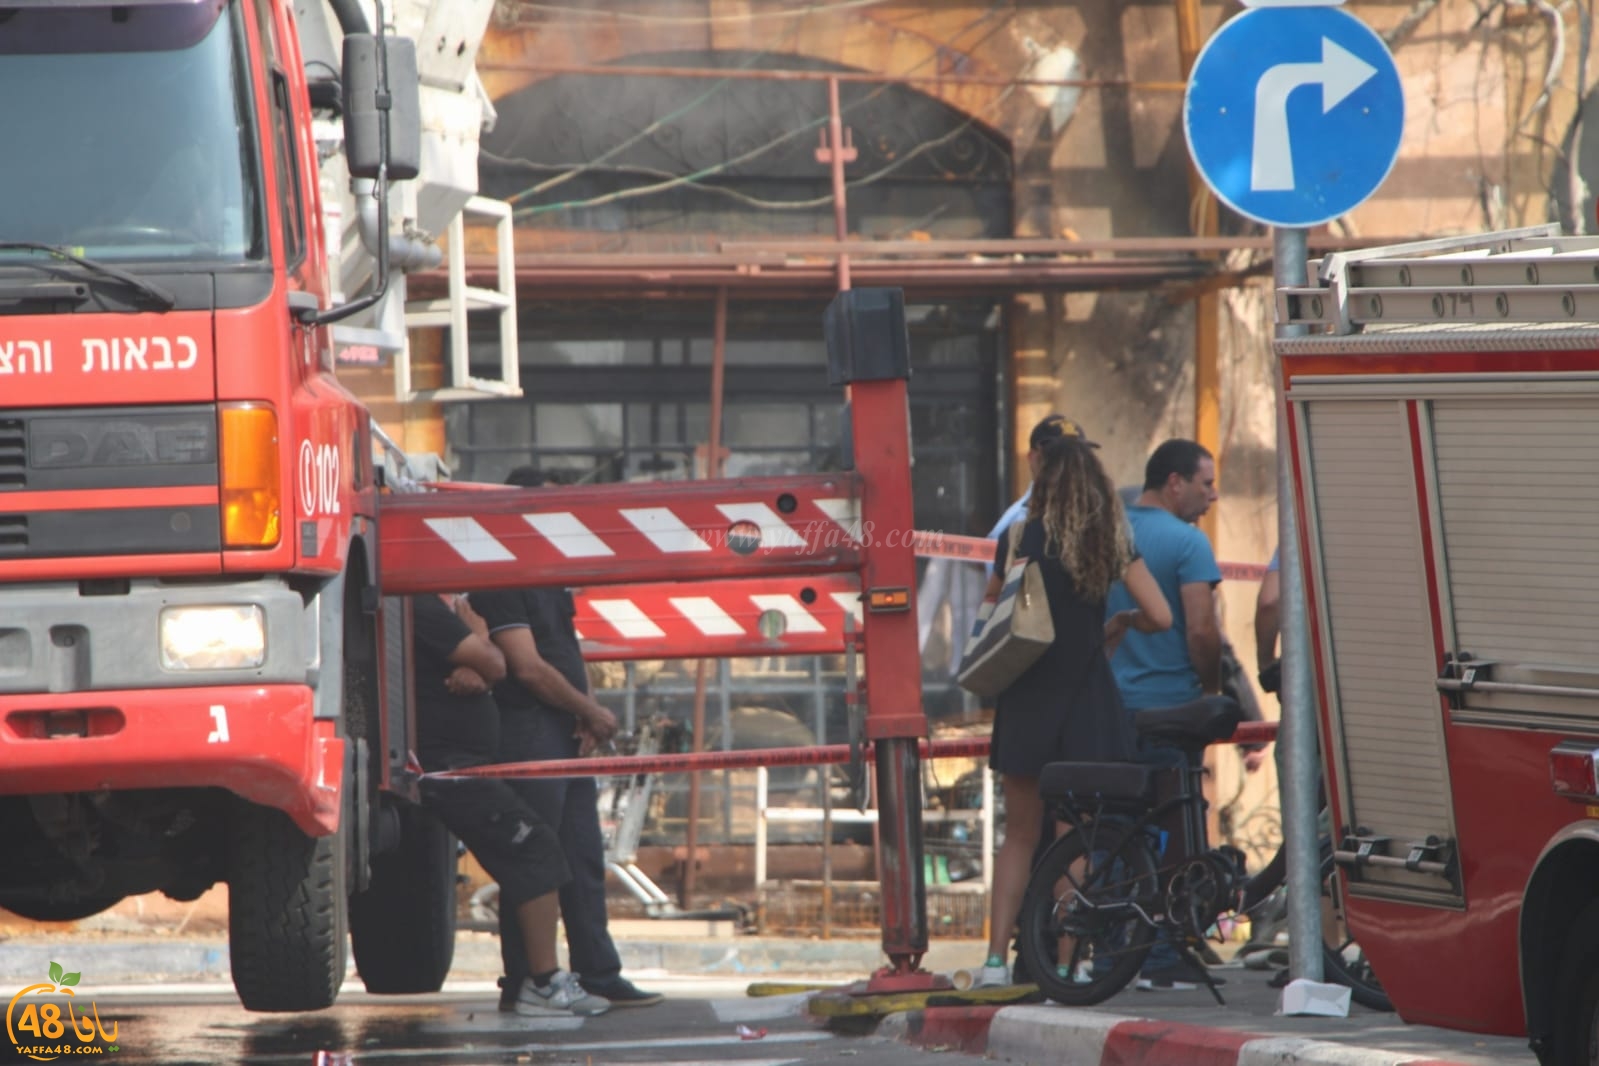  فيديو: مقتل رجل وزوجته من الخليل اثر احتراق مبنى في شارع يهودا مرجوزا بيافا 